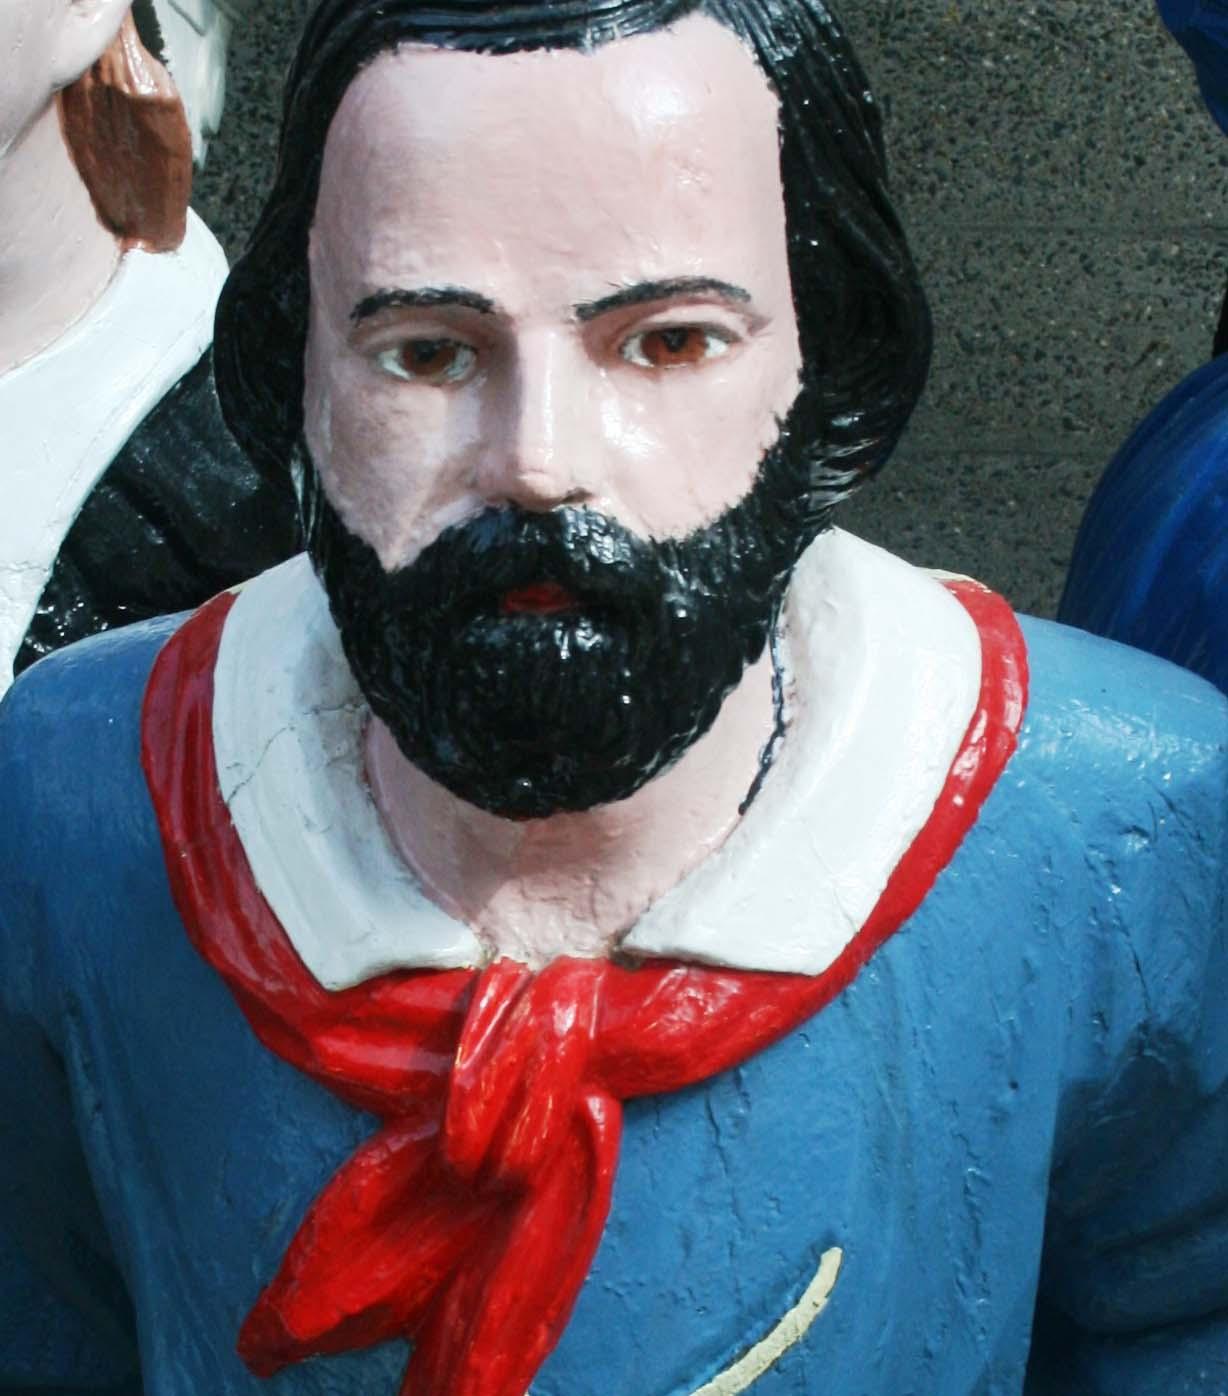 Garibaldi, part of the Cutty Sark figurehead collection